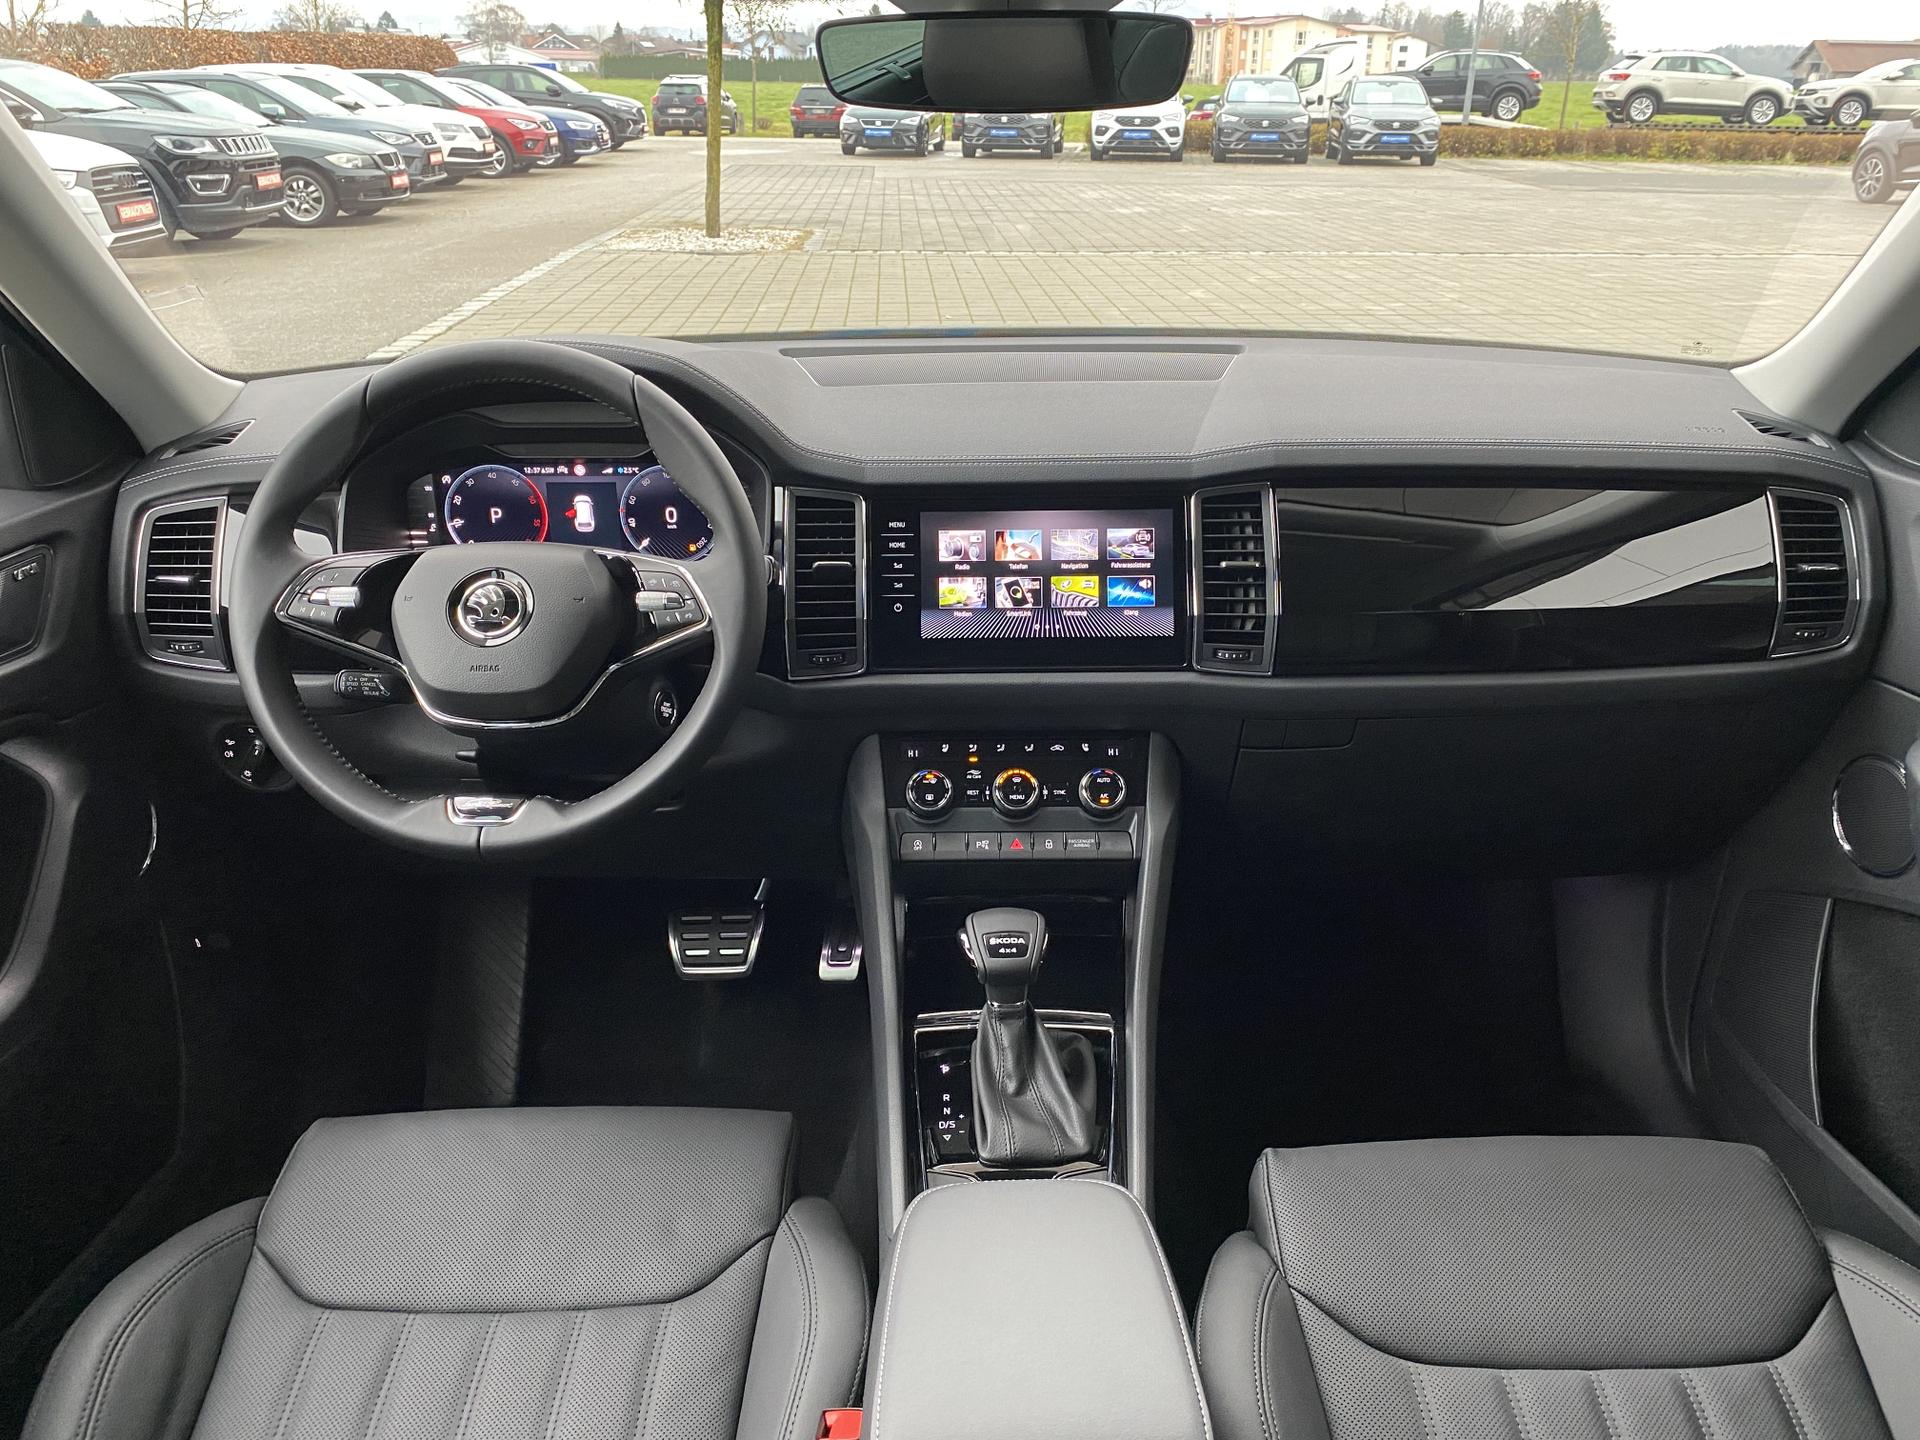 VW überarbeitet den Bestseller T-Cross SUV: Innenraum und Ausstattung